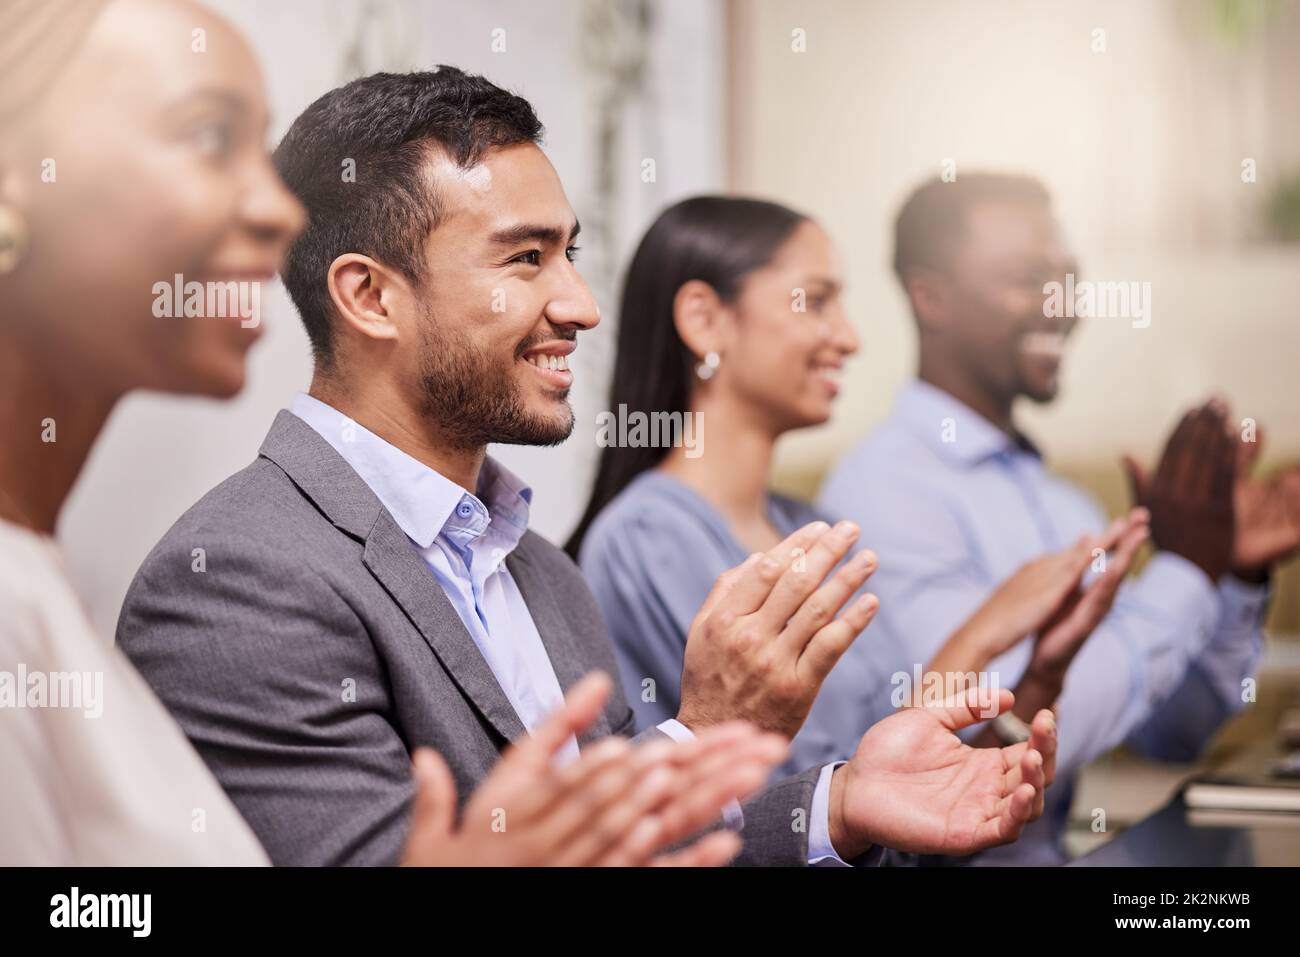 Célébrez le succès de vos collègues. Photo d'une équipe de collègues de travail qui applaudisse lors d'une réunion d'affaires. Banque D'Images